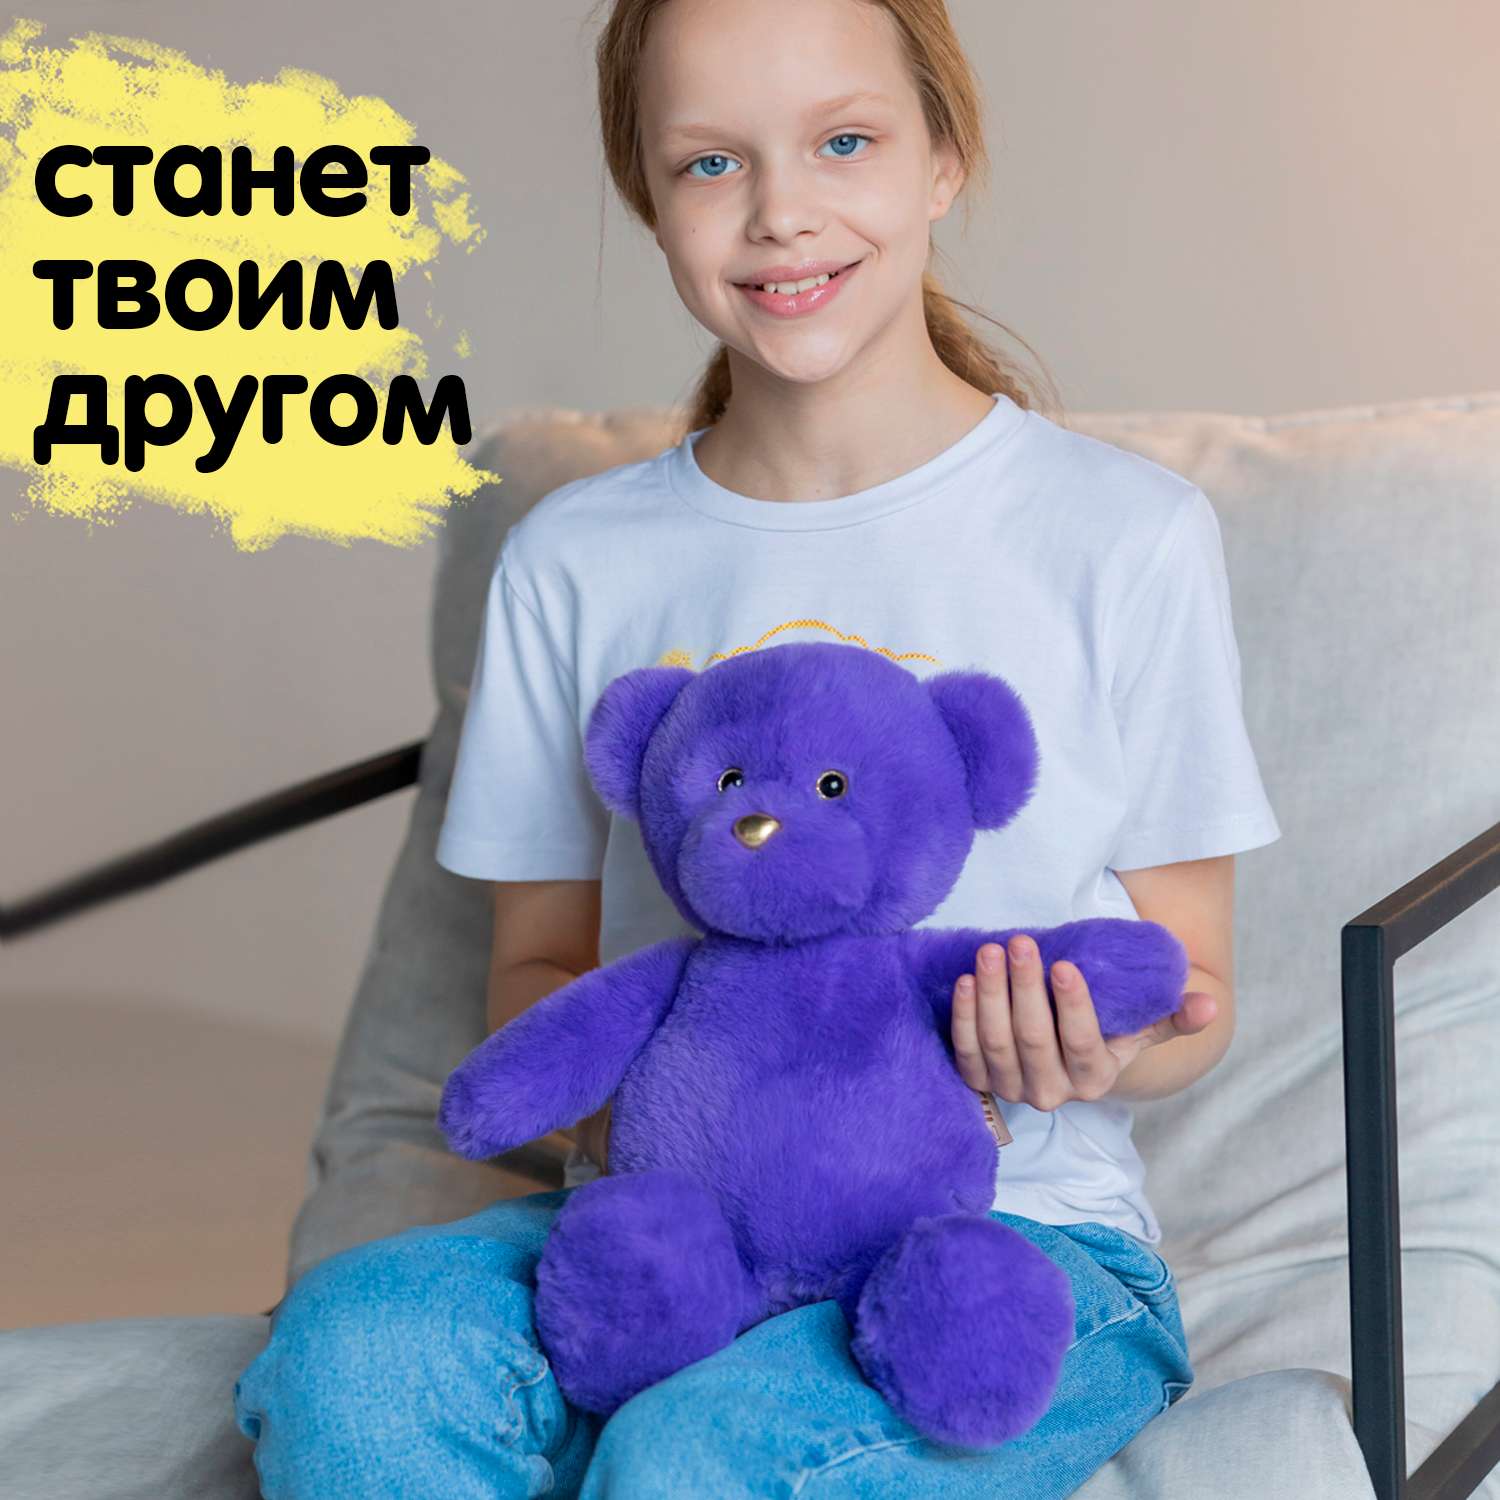 Мягкая игрушка KULT of toys Плюшевый медведь 35 см цвет фиолетовый - фото 2